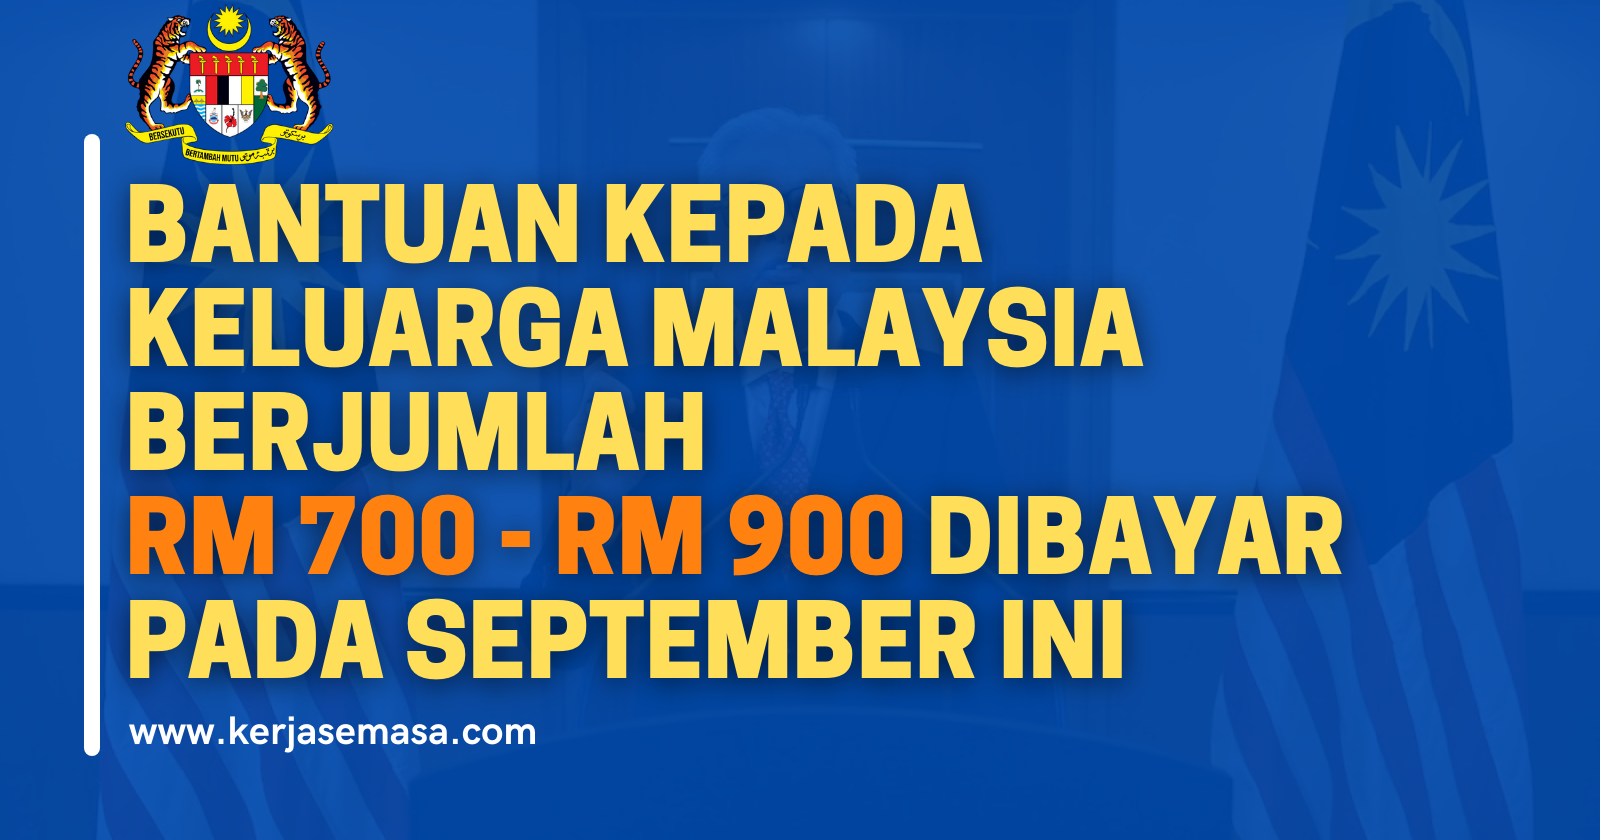 Bantuan Untuk Keluarga Malaysia RM 700 - RM 900 Dibayar Pada September Ini